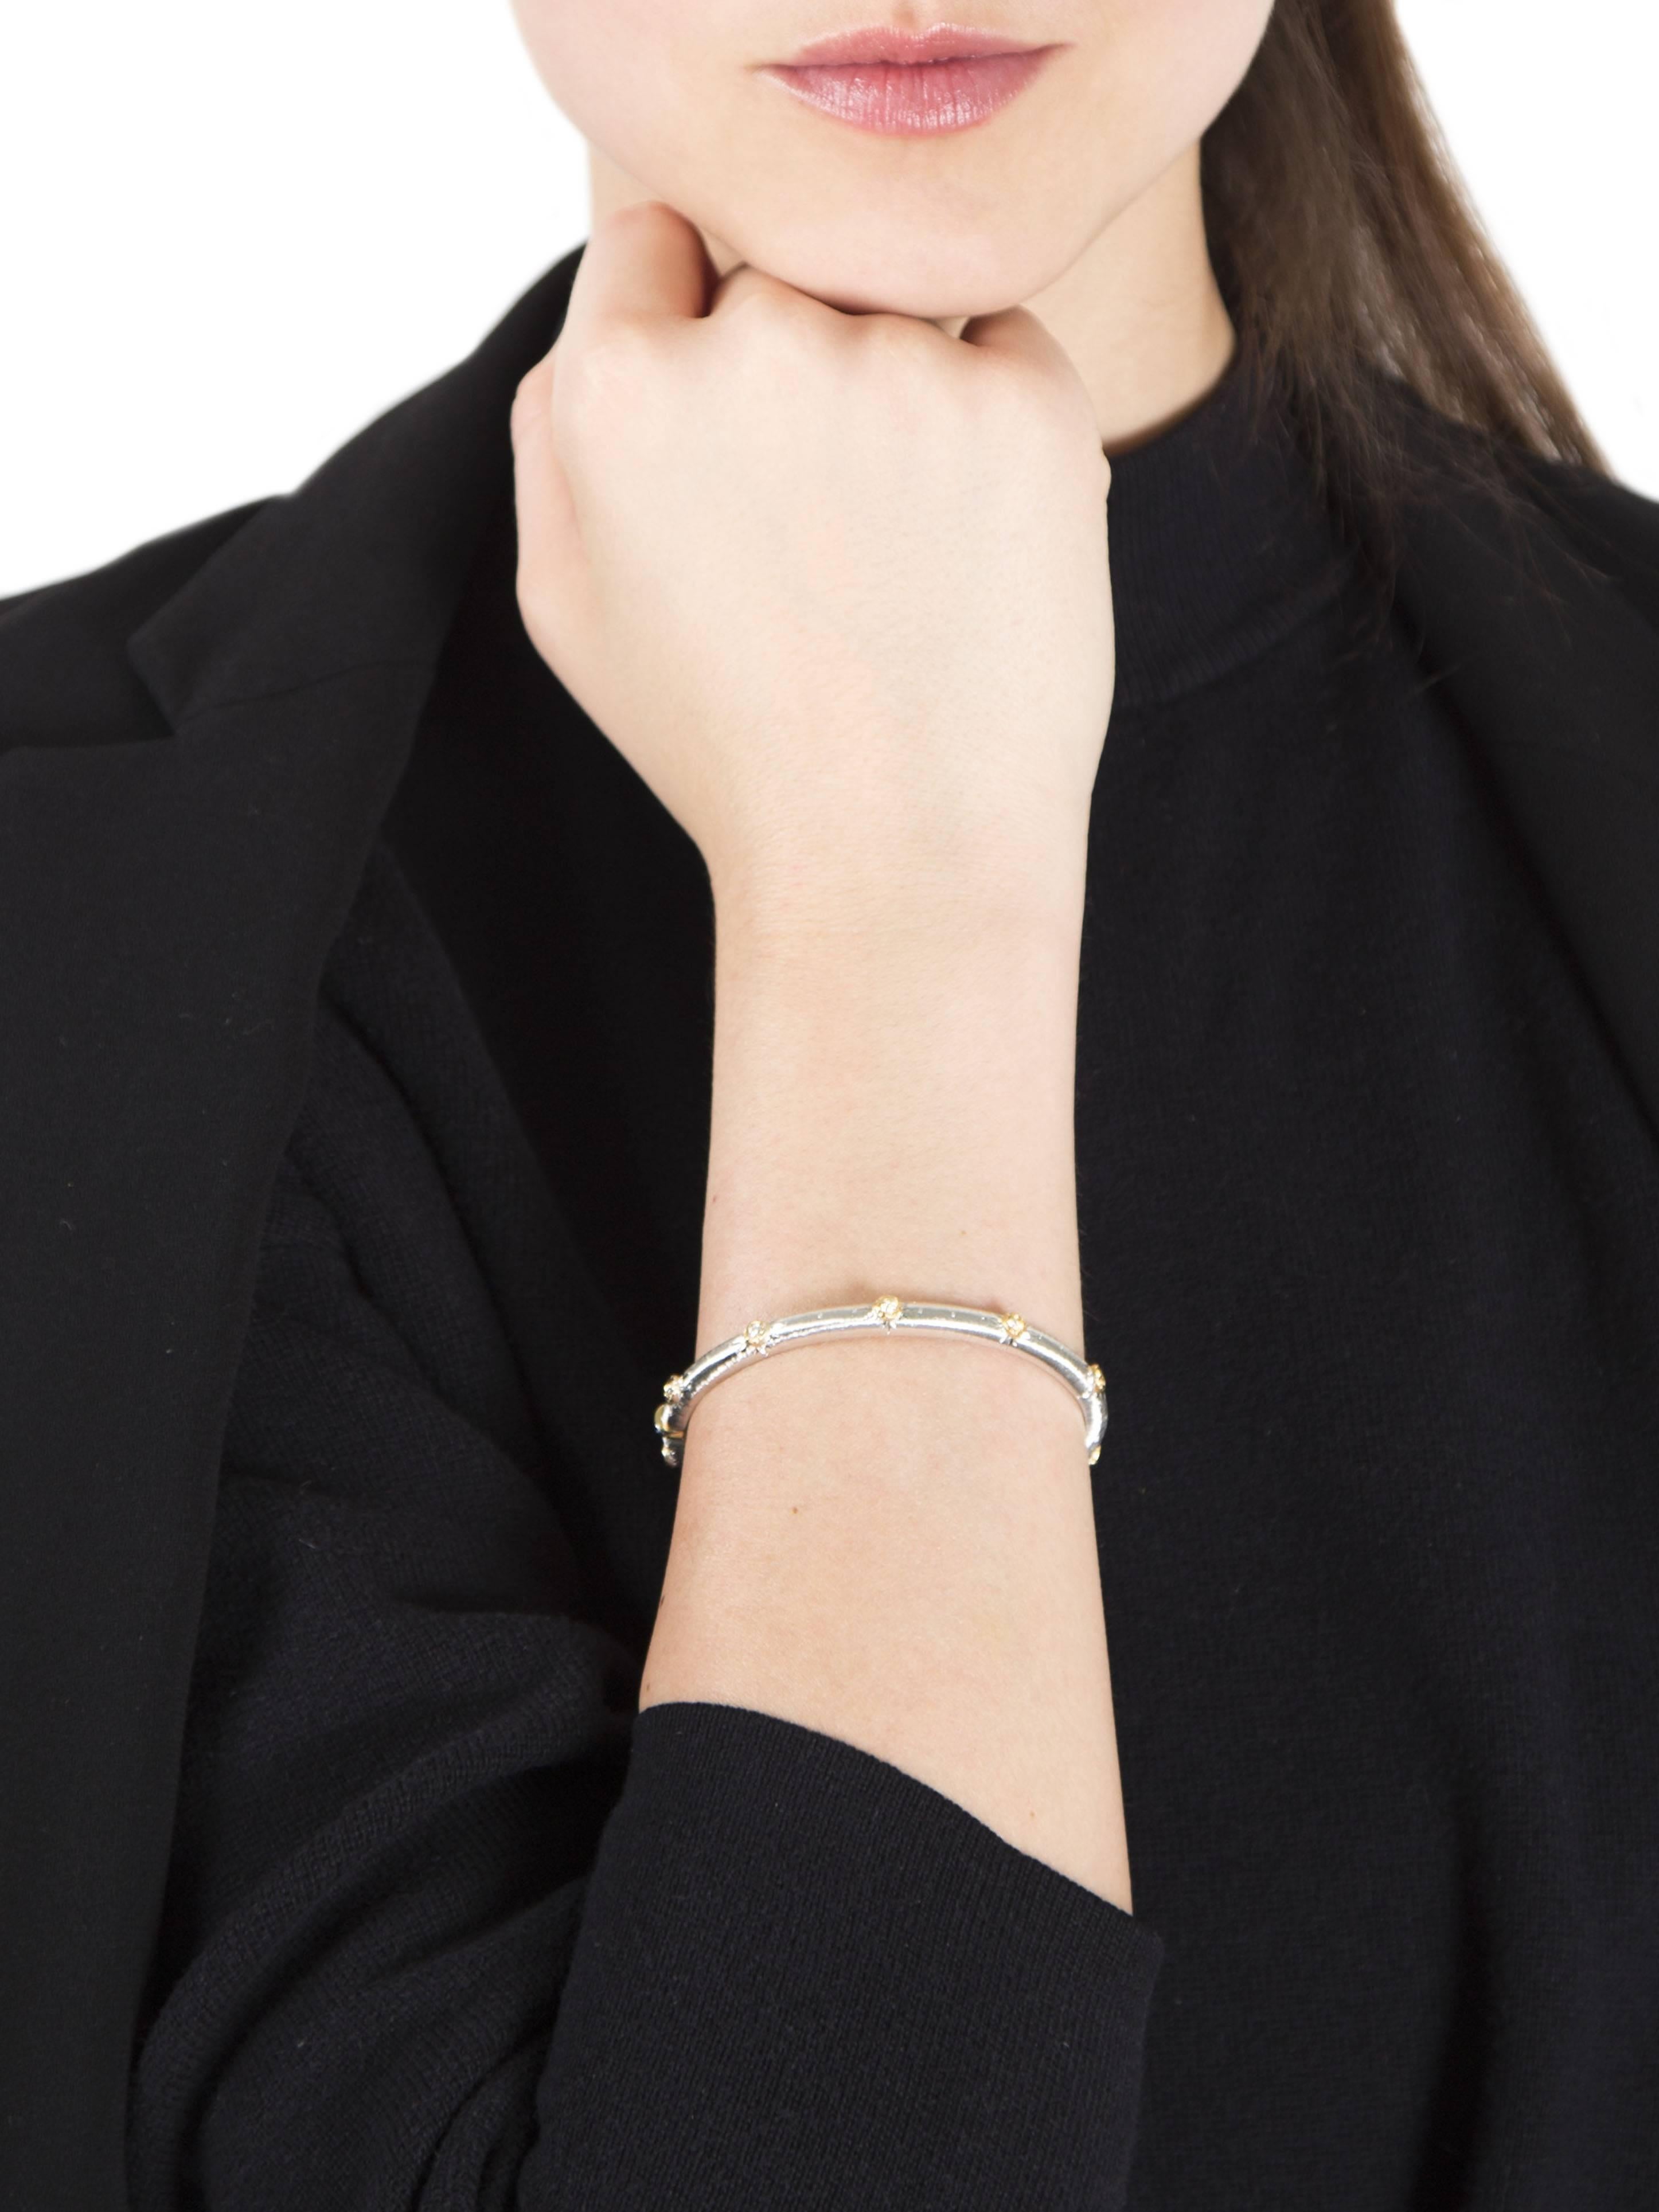 Diamond White Gold Bracelet Bangle by Opera, Italian Attitude In New Condition For Sale In Milano, IT